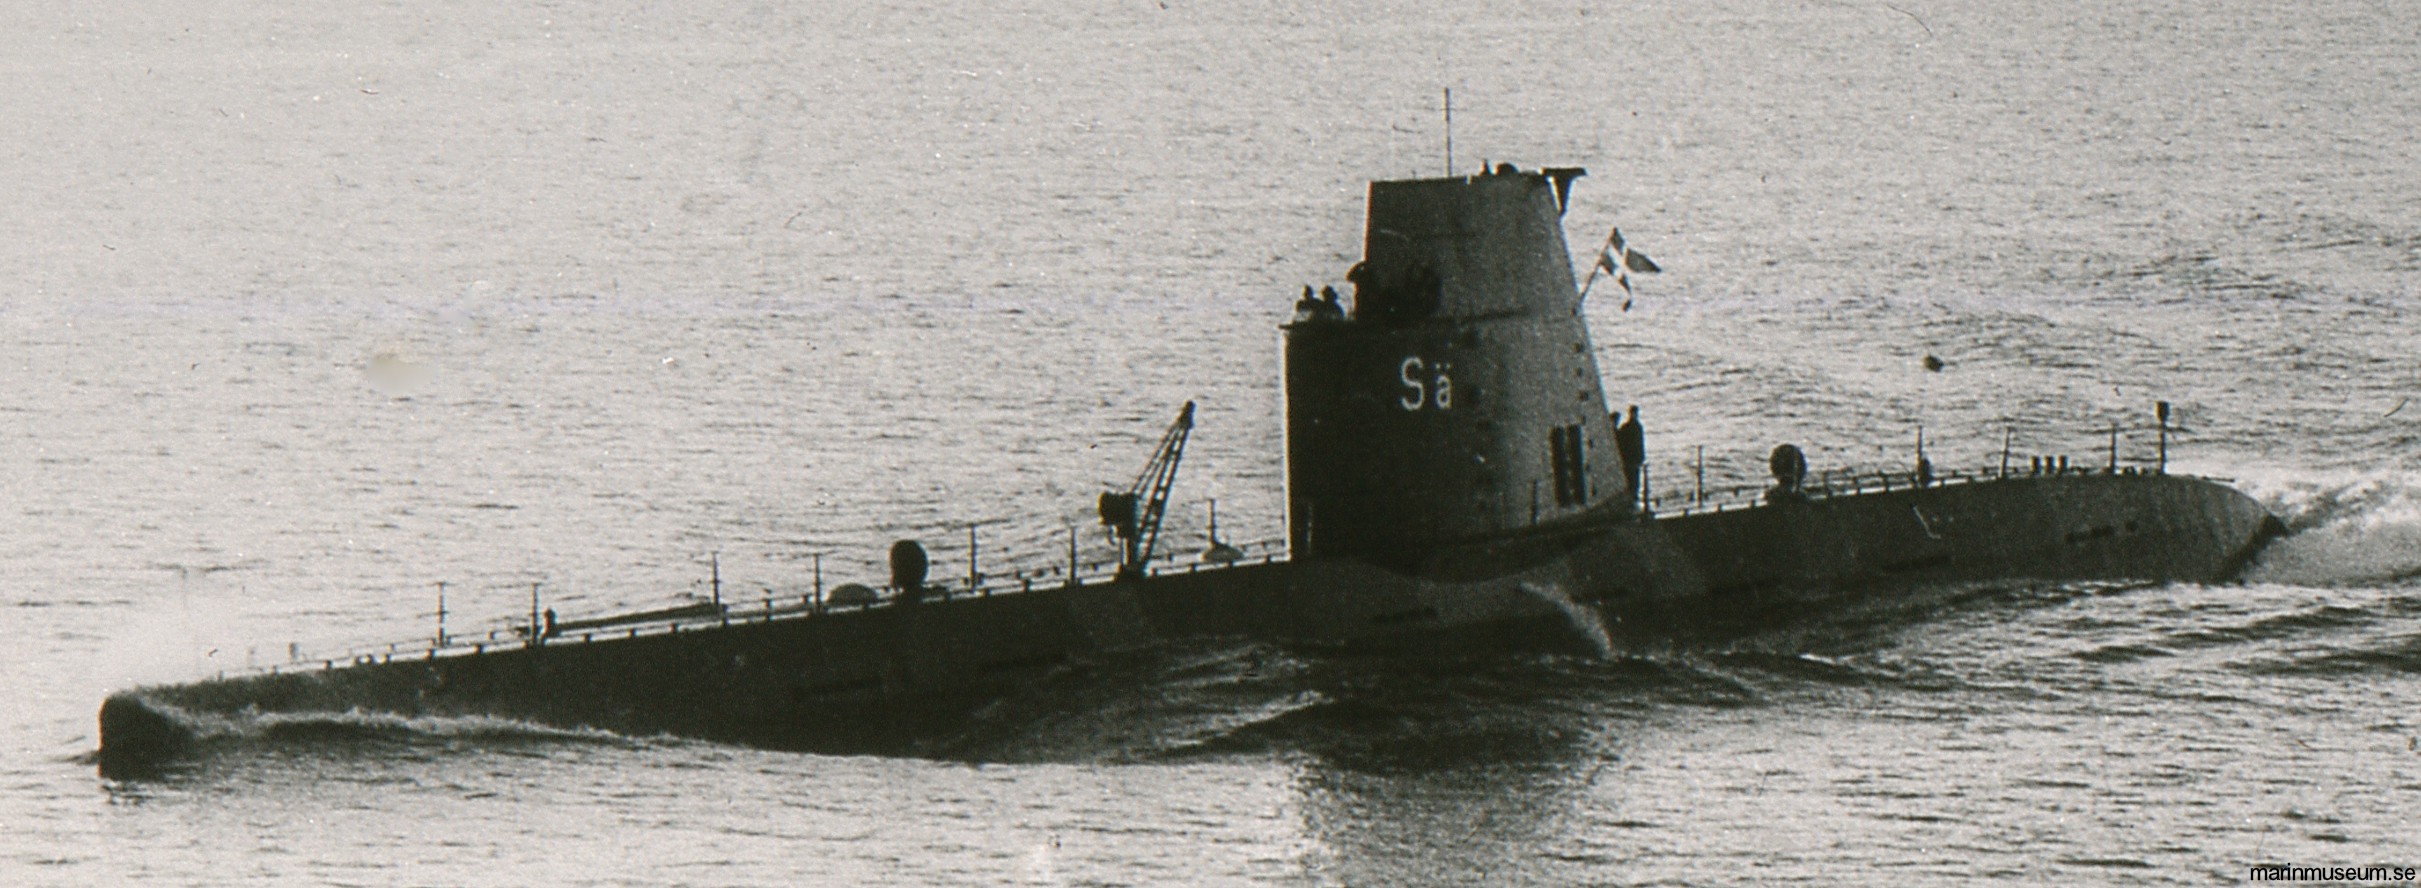 hms hswms sälen hajen a10 class attack submarine ubåt swedish navy svenska marinen försvarsmakten 06